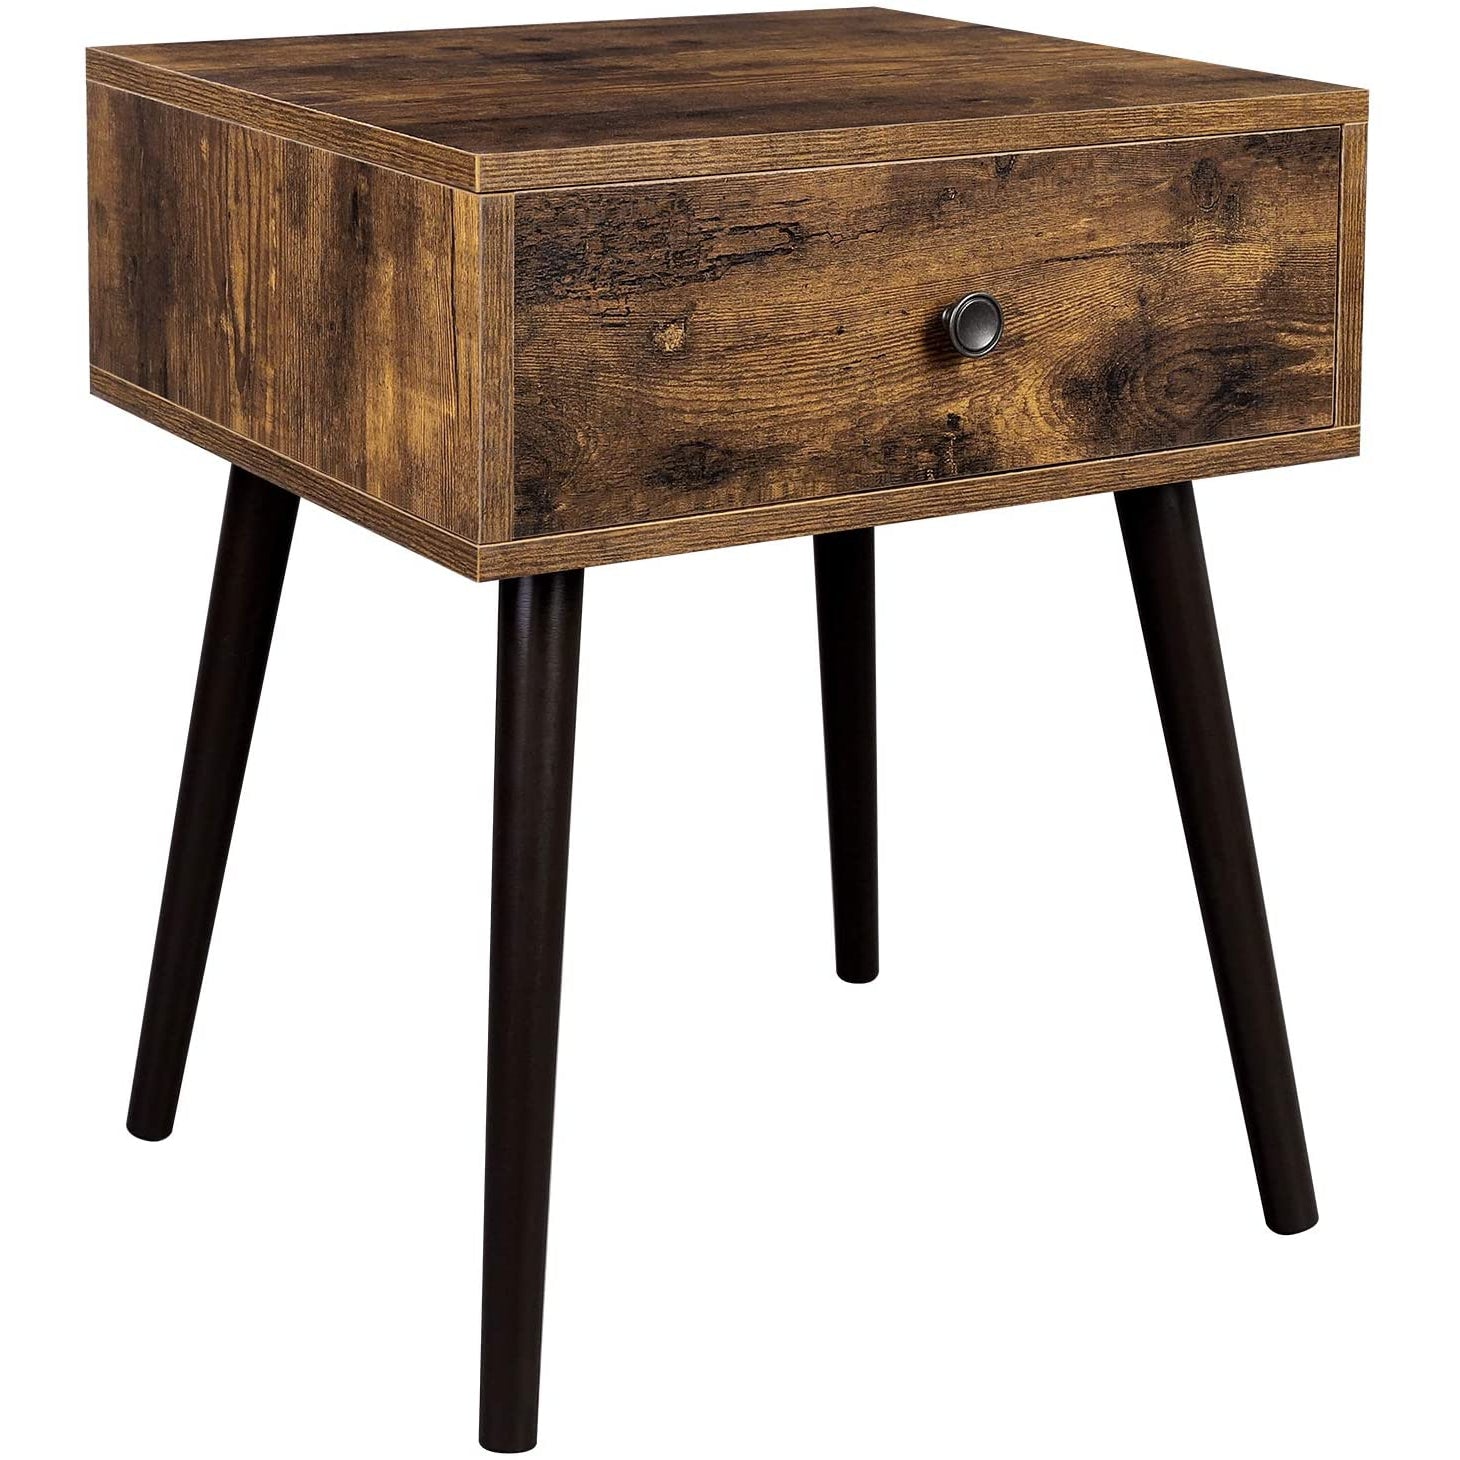 Table d'appoint Elko de Nancy - Table d'appoint - Table de chevet - Vintage - 40 x 48 x 55,5 cm